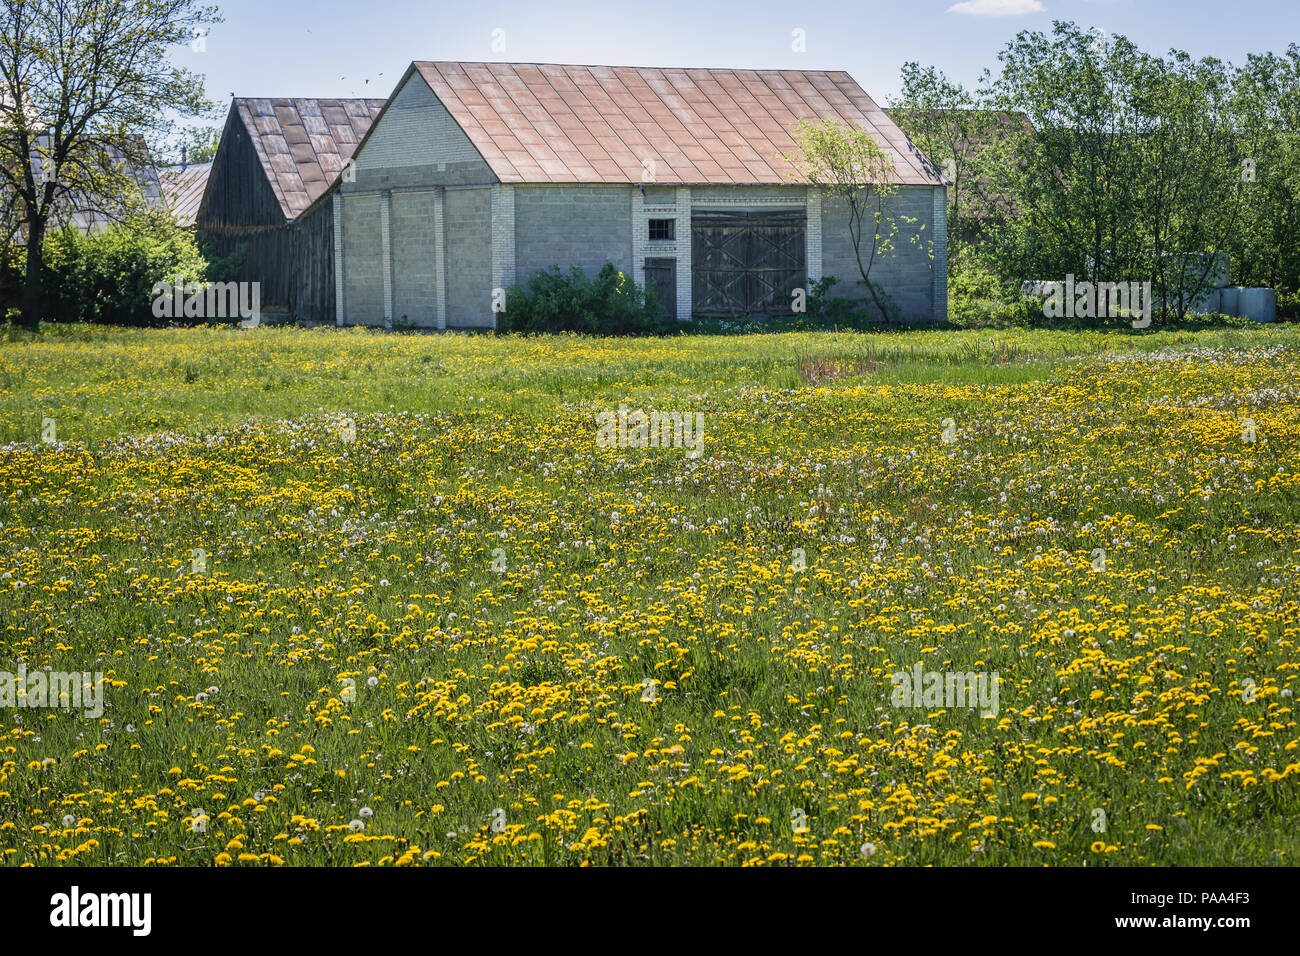 Barns in small village in Wegrow County, Masovia region, Poland Stock Photo